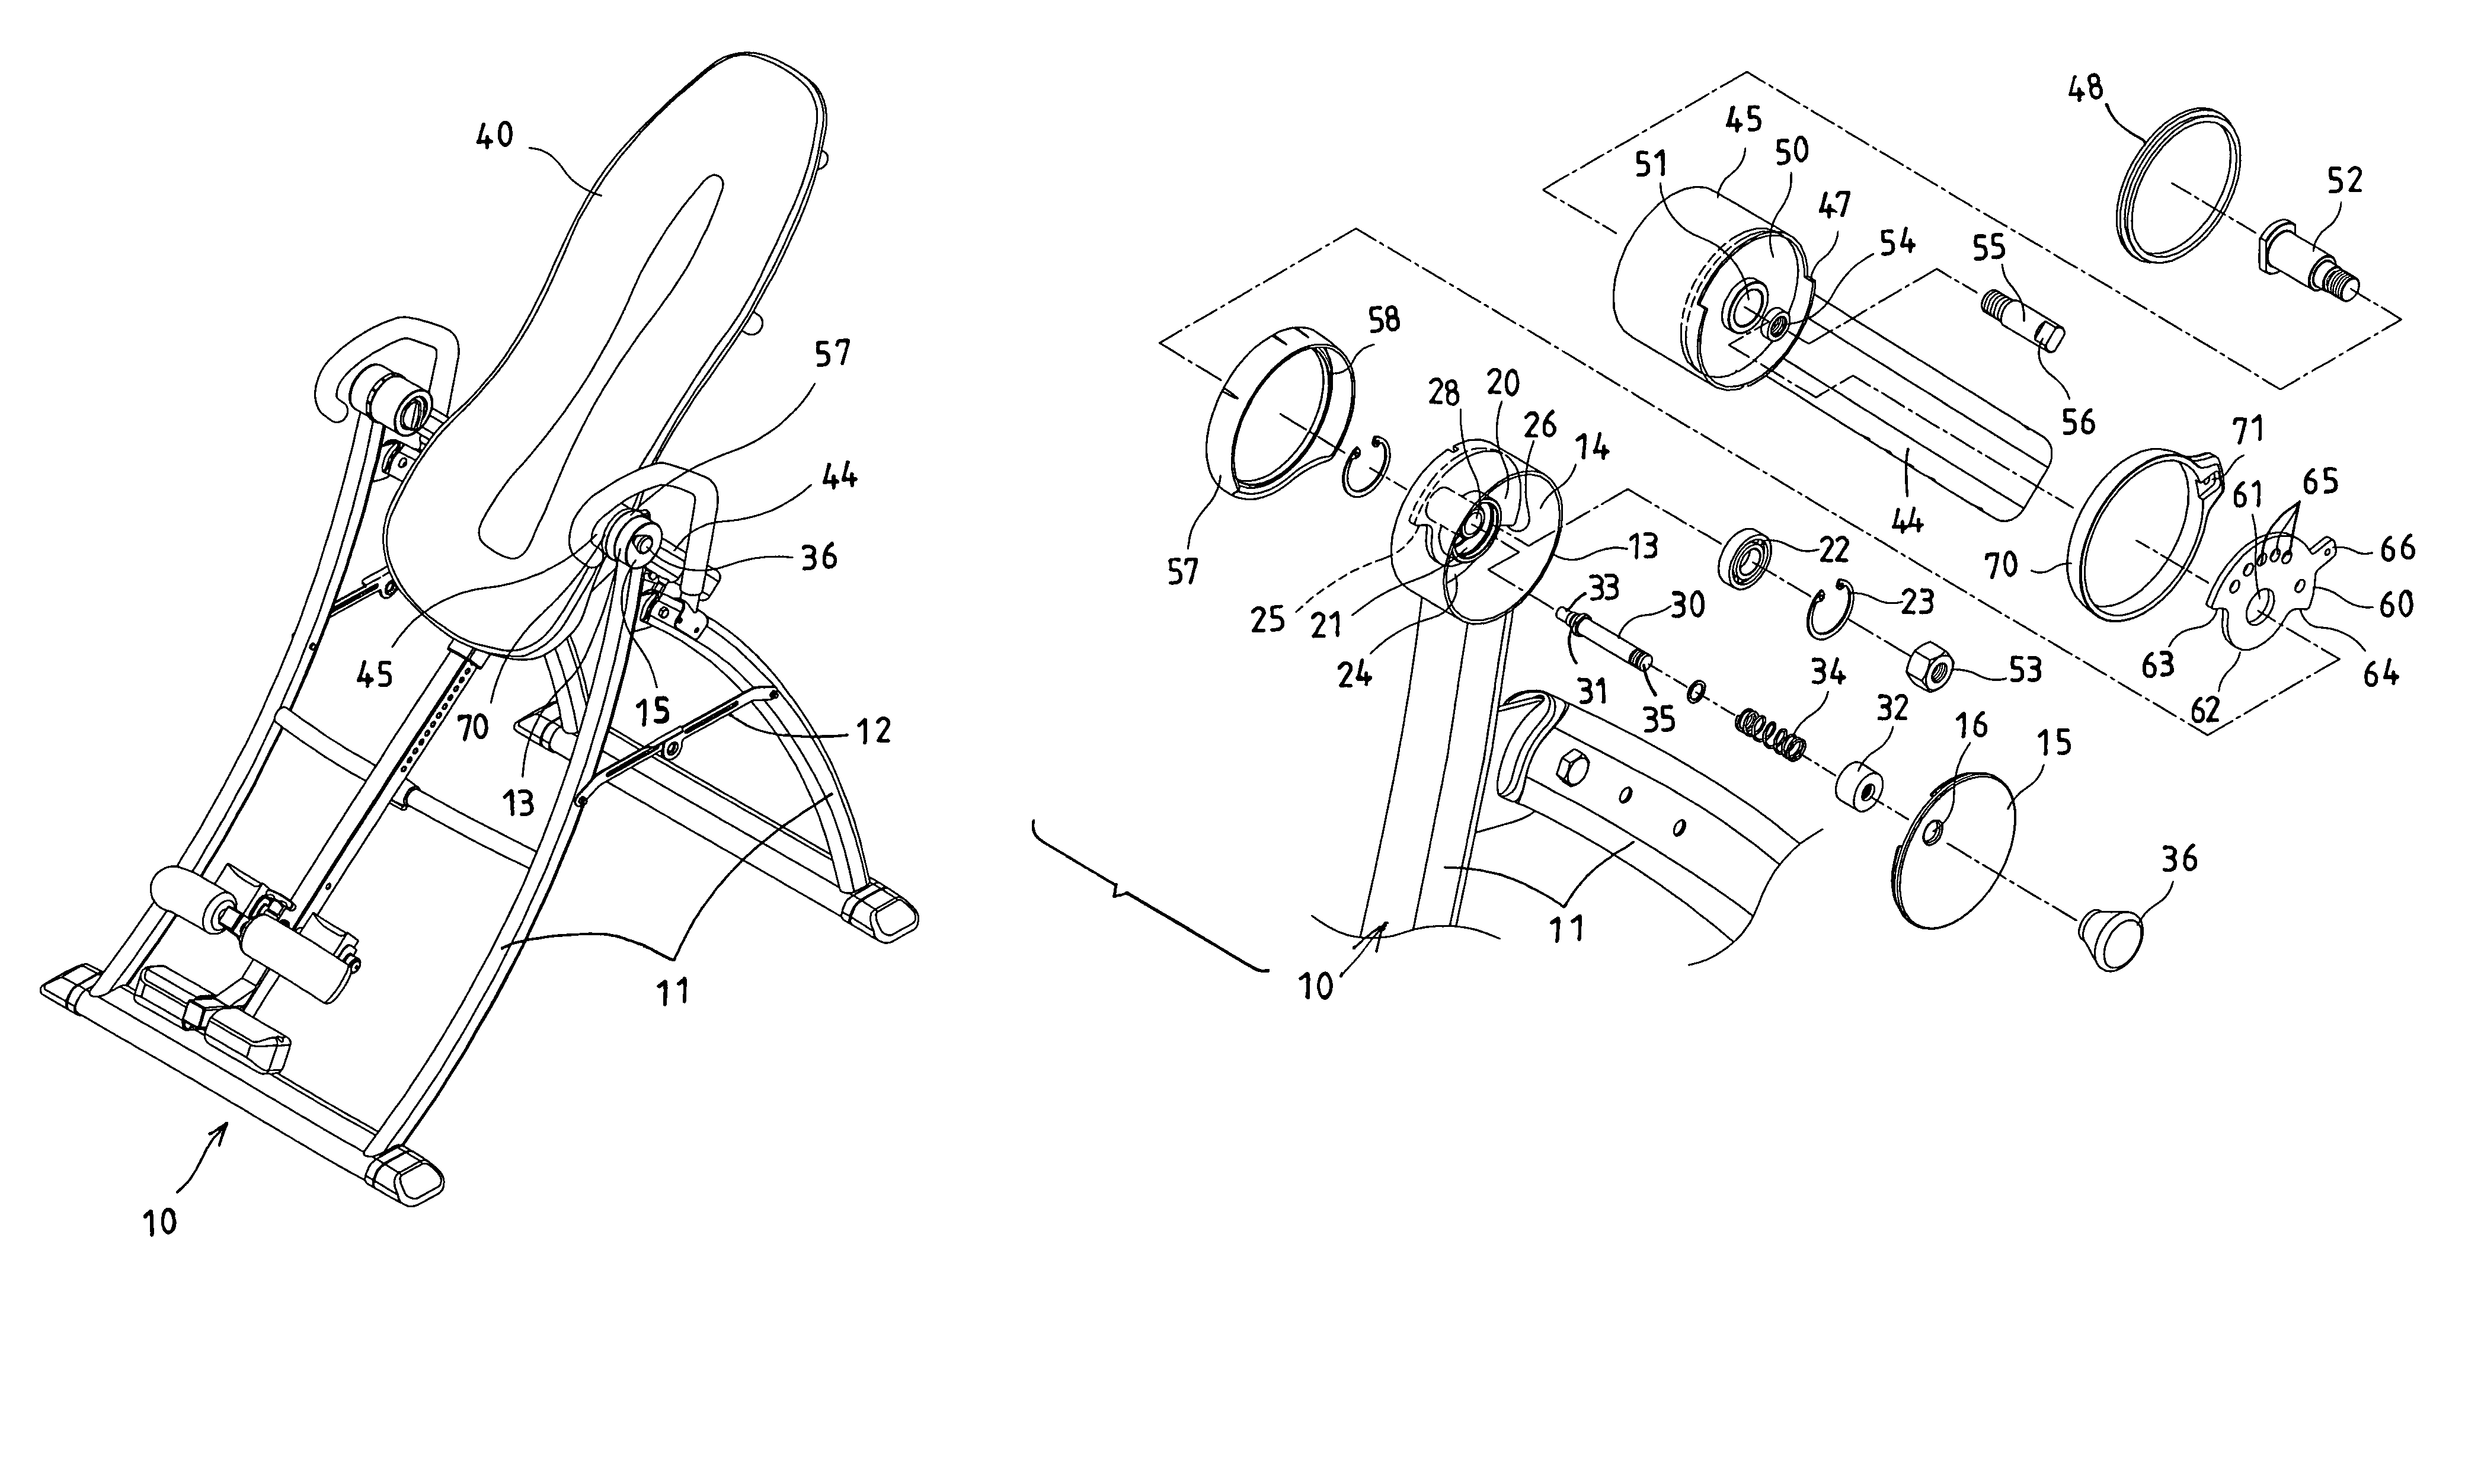 Angle adjusting mechanism for tilting inversion exerciser